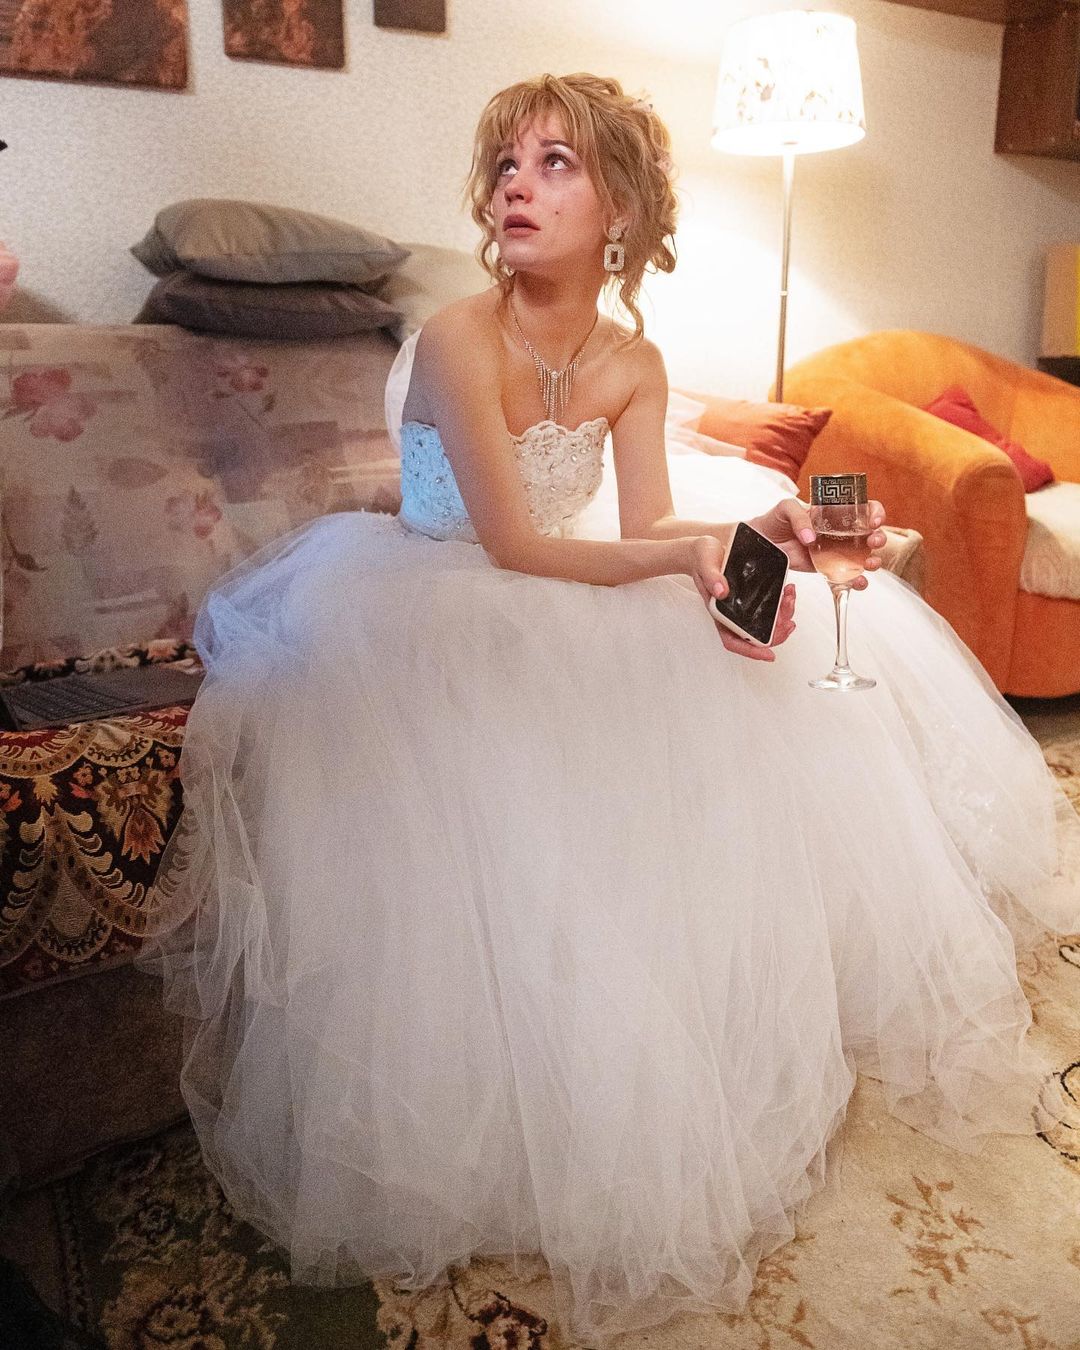 Кристина Асмус надела свадебное платье 